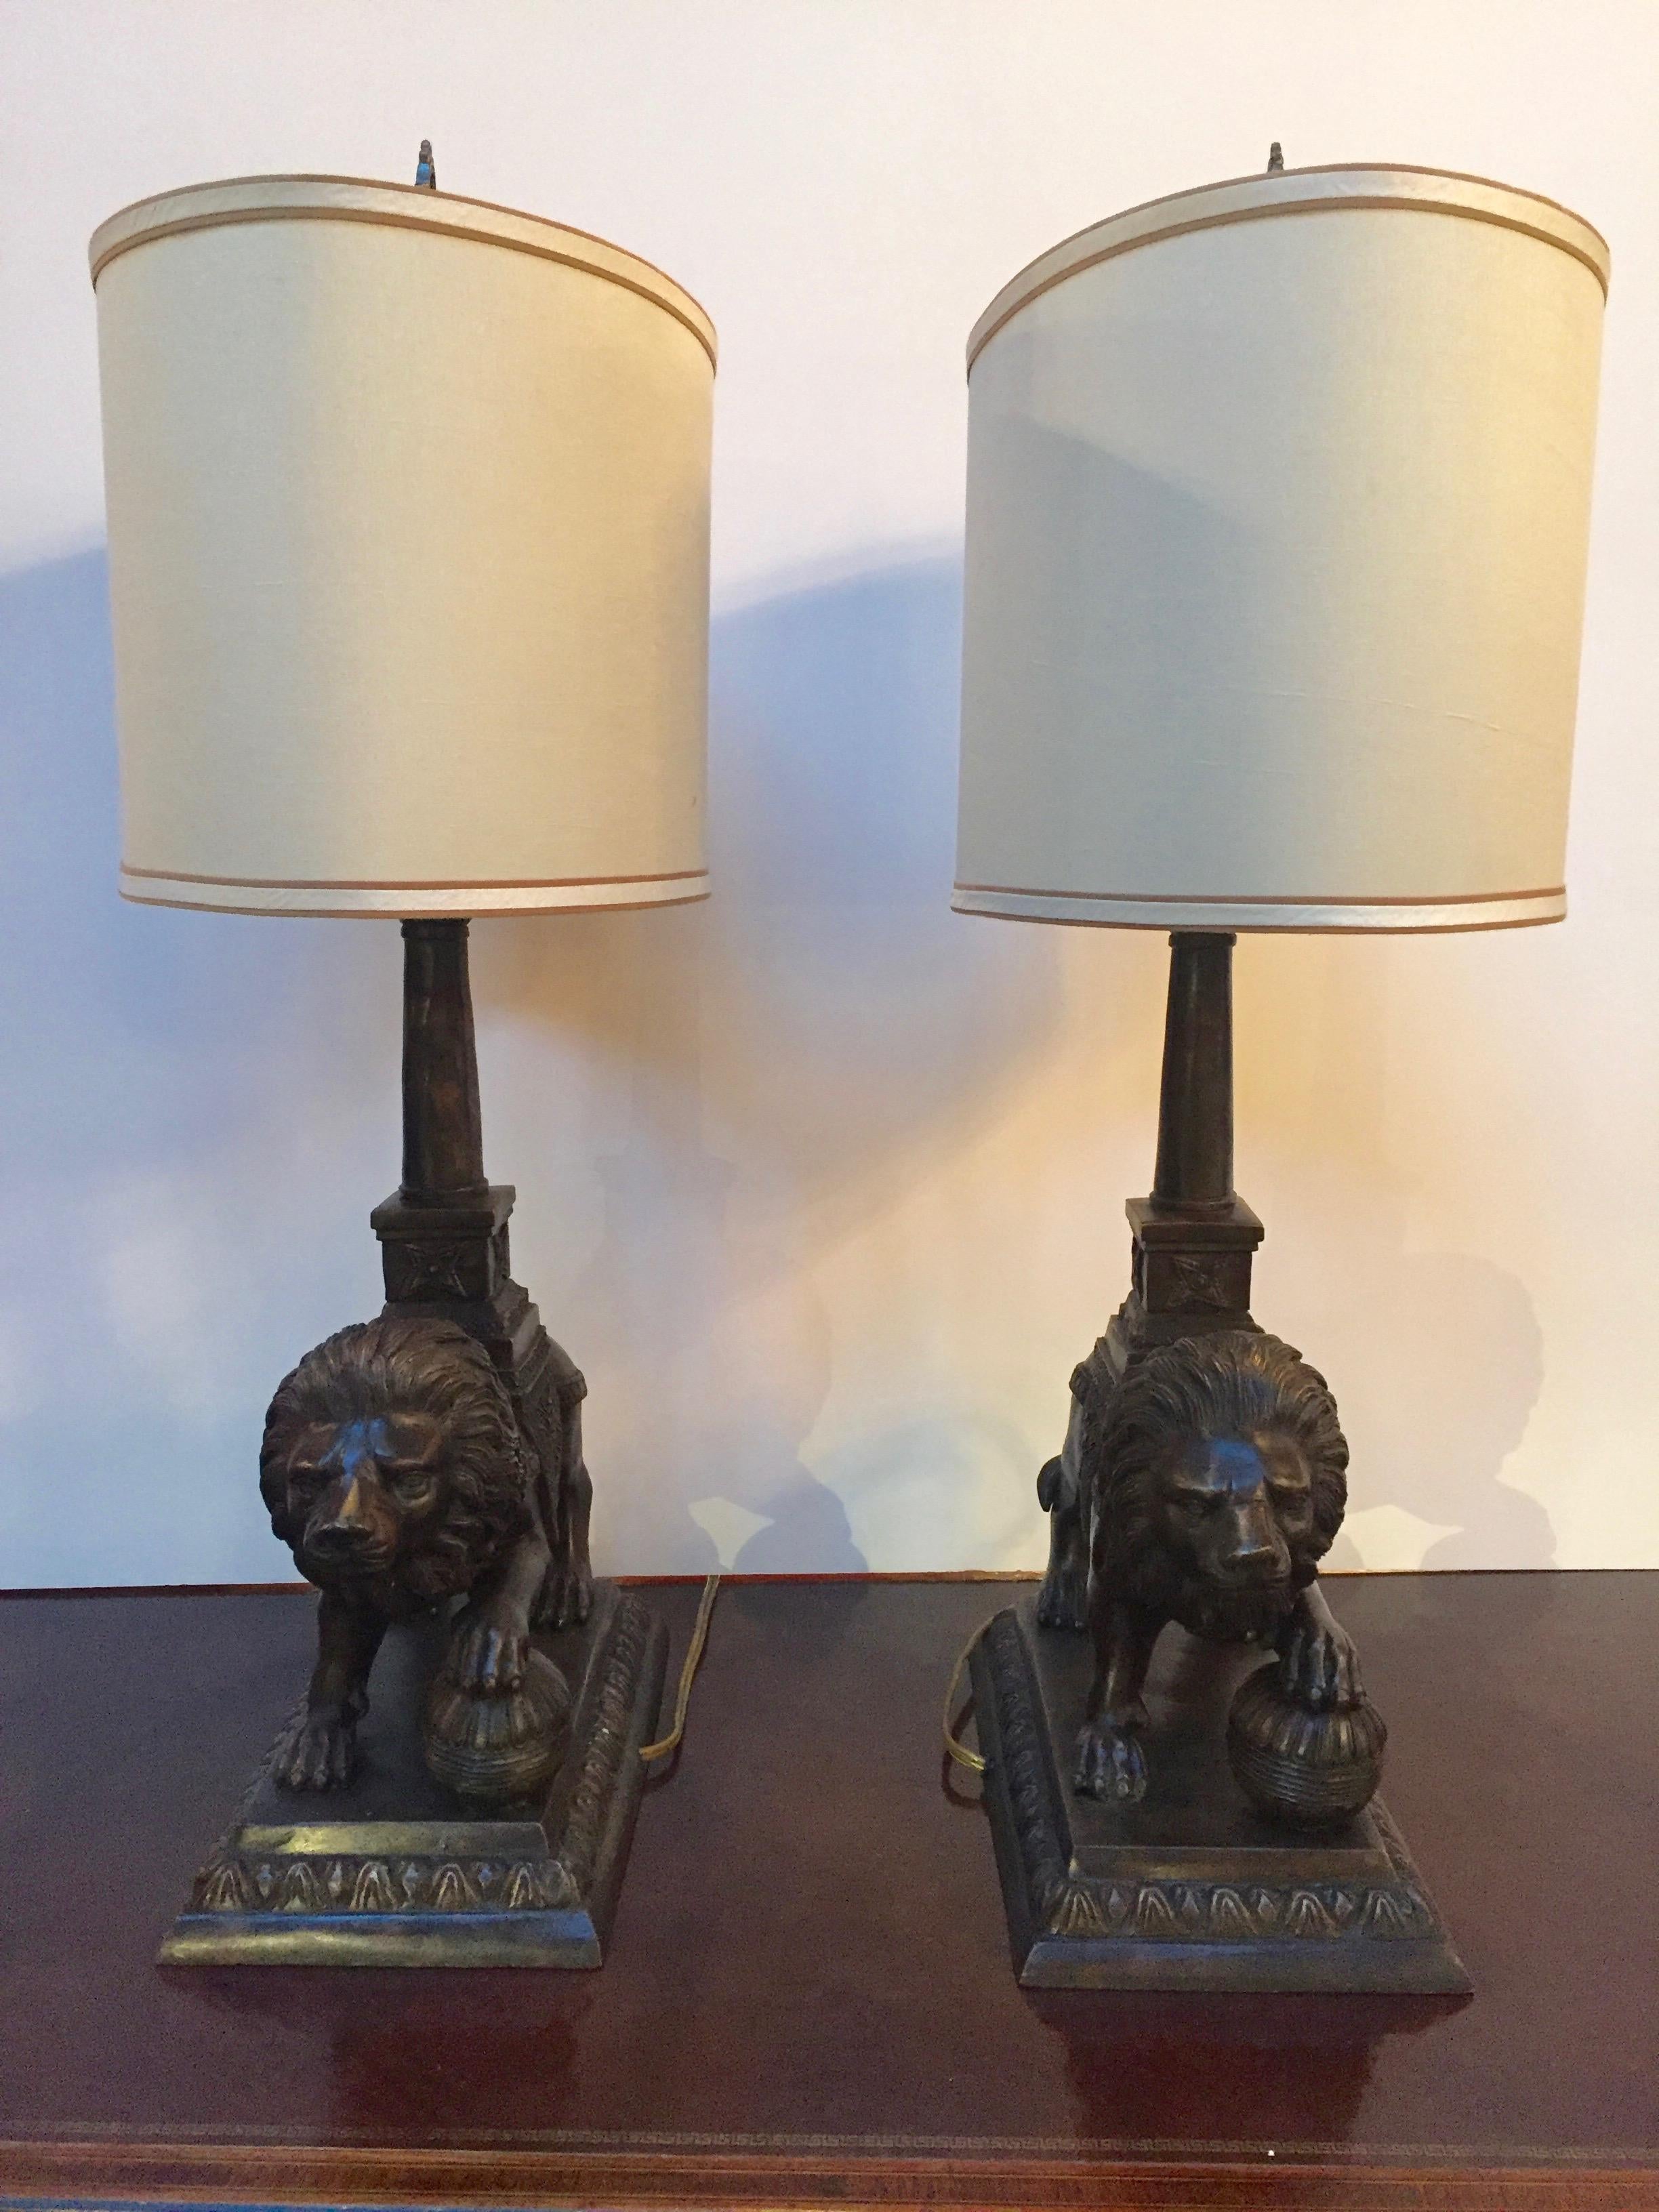 Beeindruckendes Lampenpaar mit Bronzeskulpturen von Löwen auf Bronzesockeln. 
Jede Lampe hat eine Fassung für eine 60-Watt-Birne. 
16 x 10 Farbtöne.